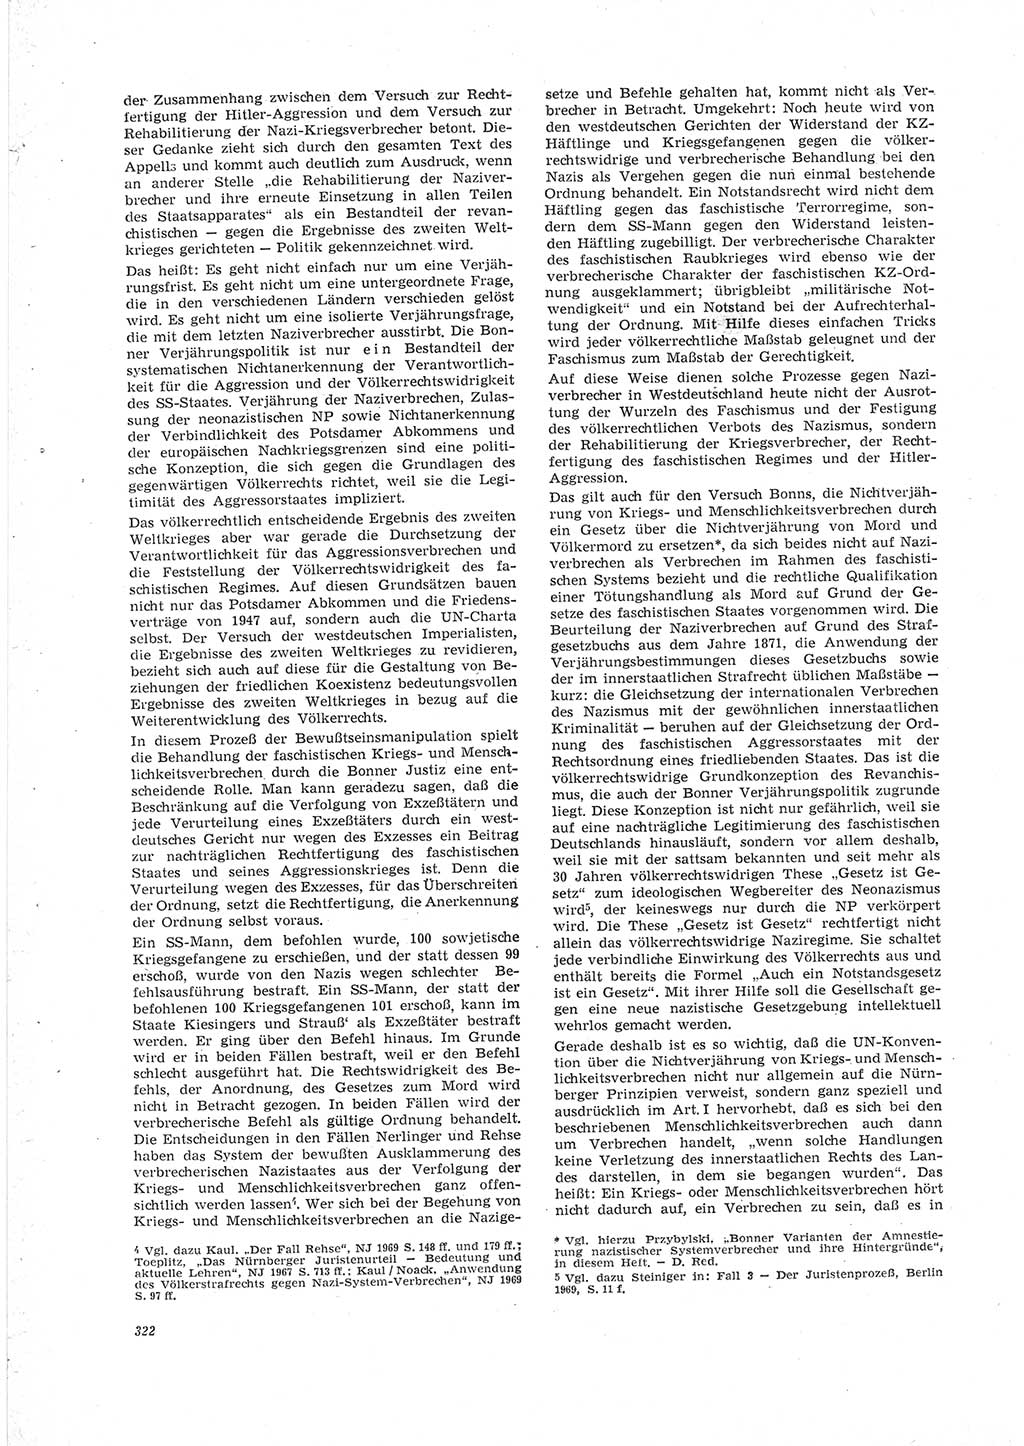 Neue Justiz (NJ), Zeitschrift für Recht und Rechtswissenschaft [Deutsche Demokratische Republik (DDR)], 23. Jahrgang 1969, Seite 322 (NJ DDR 1969, S. 322)